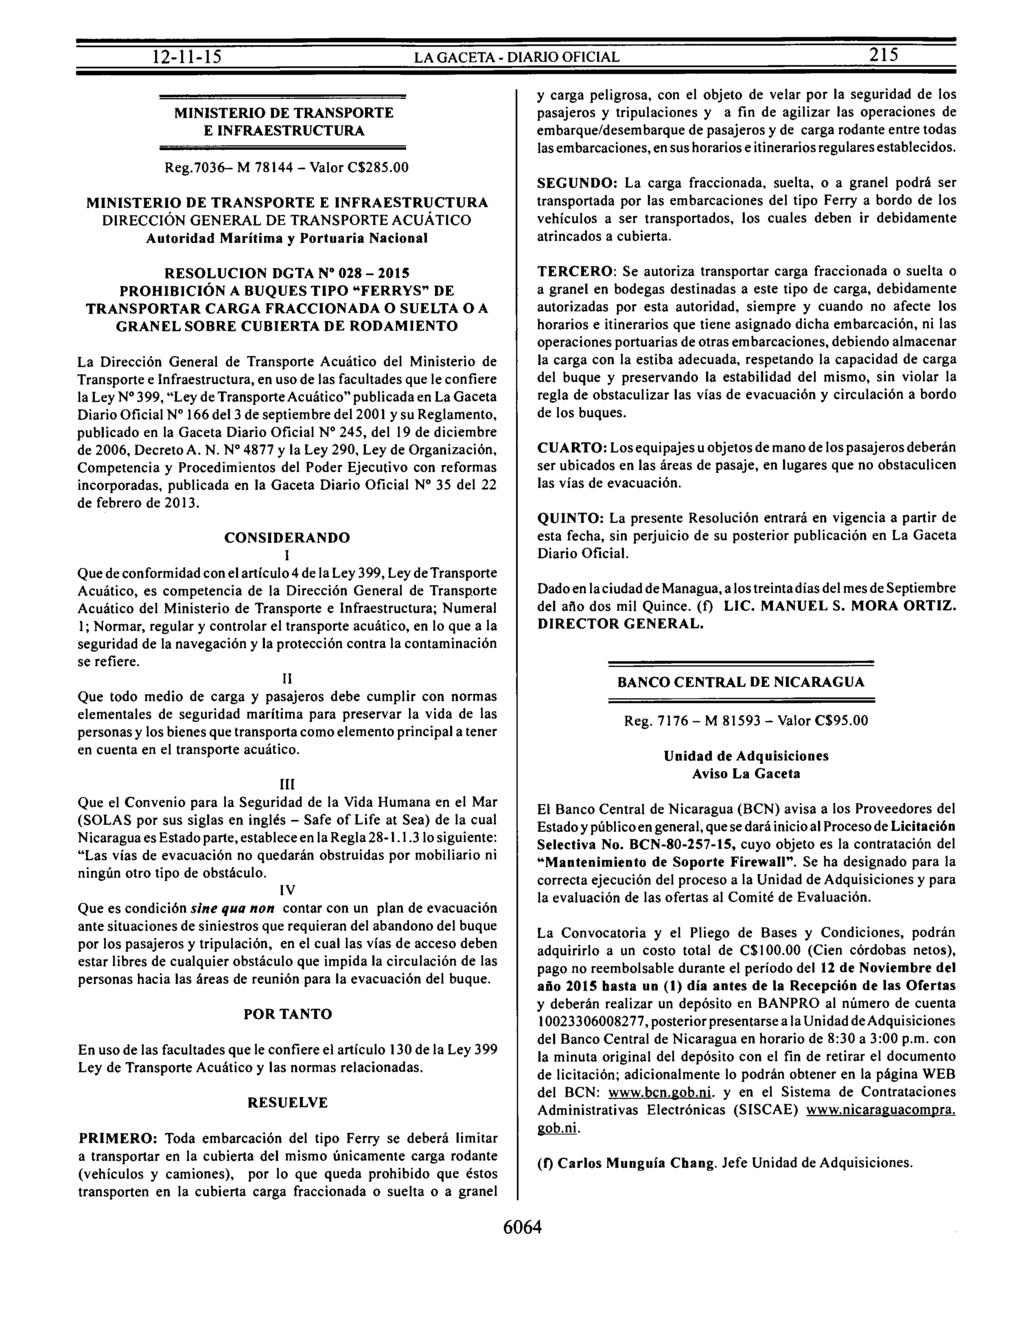 MINISTERIO DE TRANSPORTE E INFRAESTRUCTURA Reg.7036- M 78144 - Valor C$285.